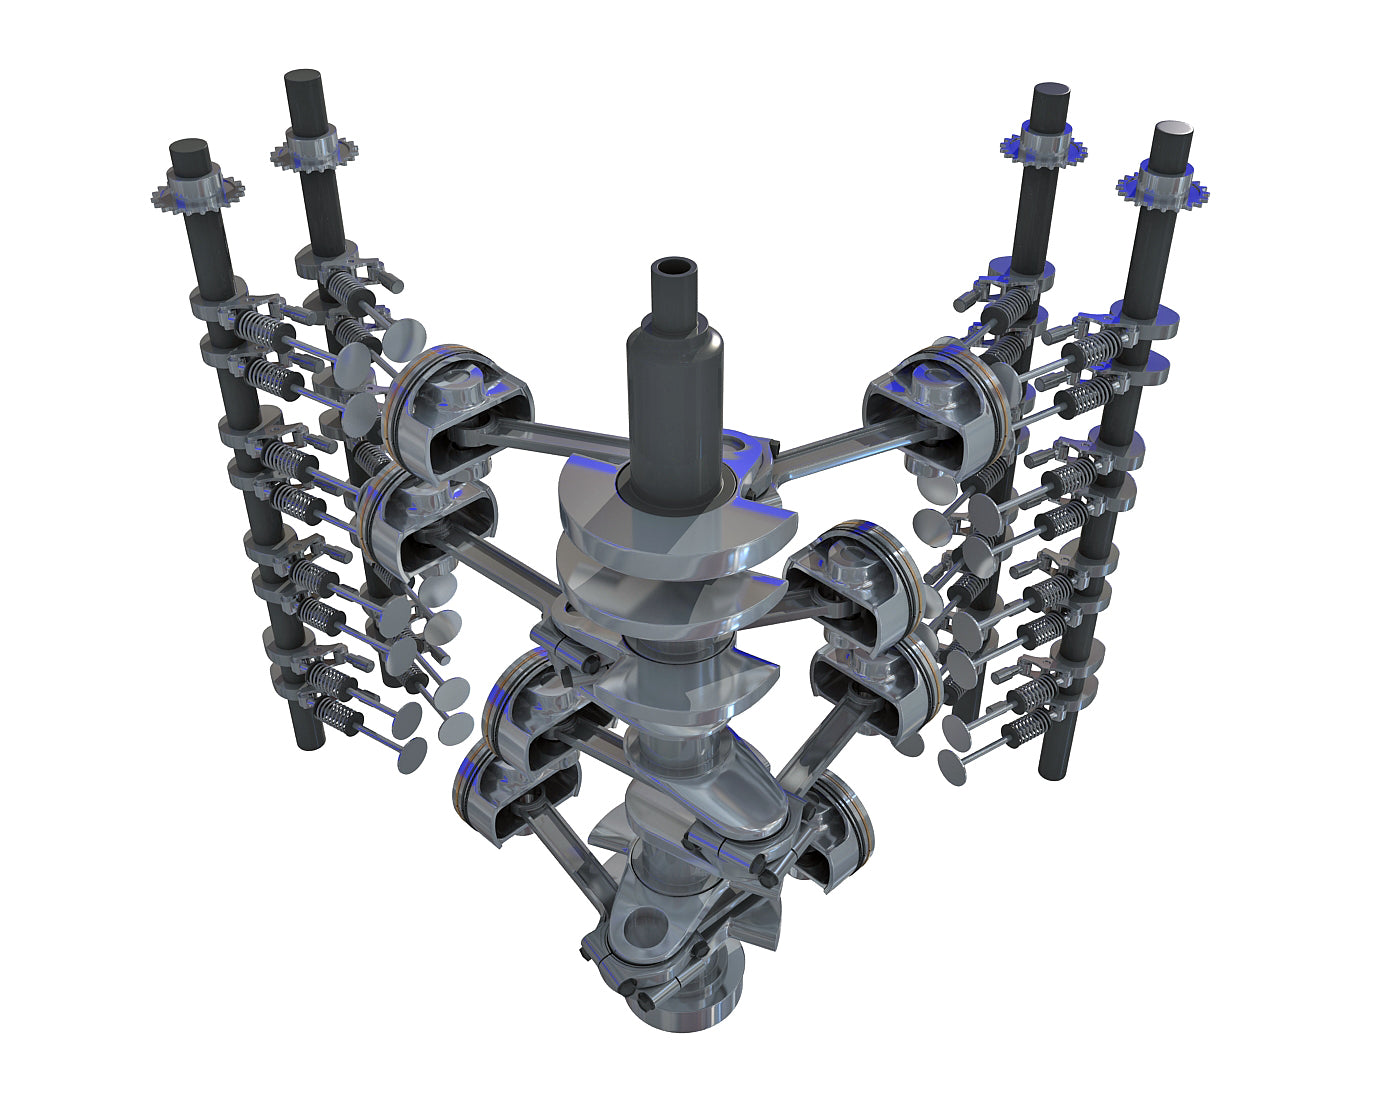 Animated V8 Engine Cylinders